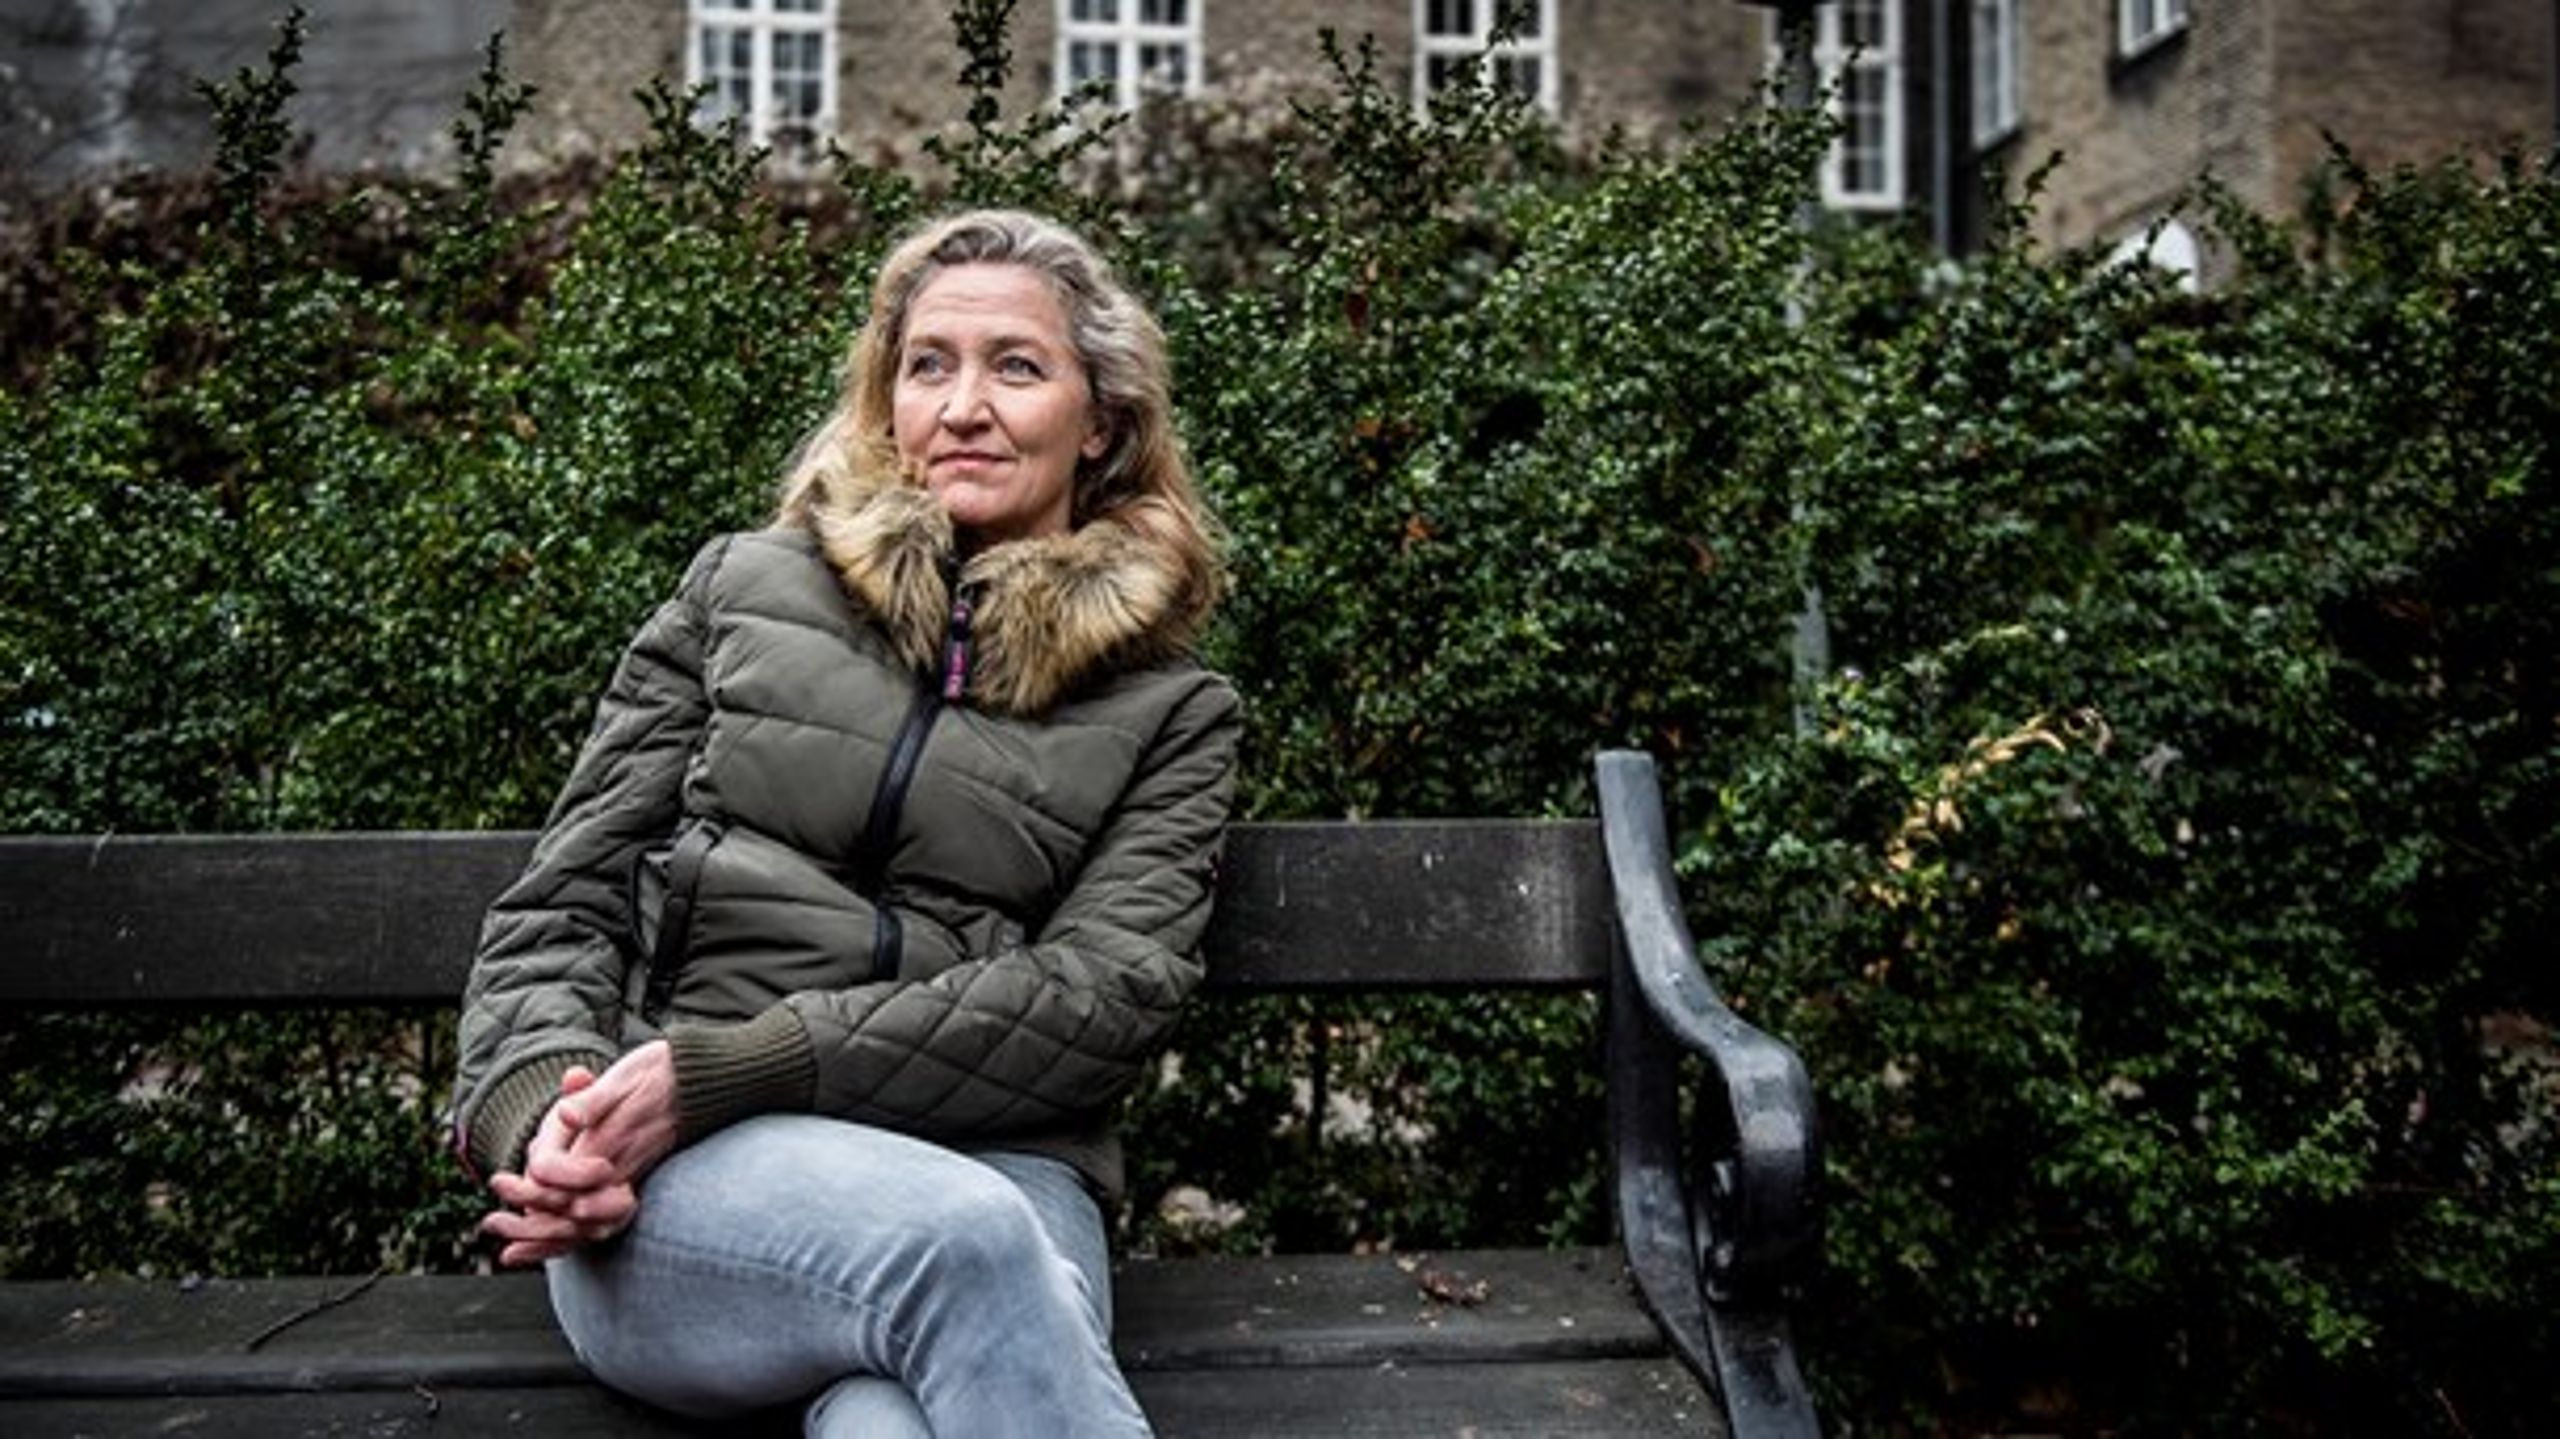 For at forstå det stigende antal ældre hjemløse kan man ikke nøjes med at snakke om fokus og gode intentioner, mener Lisbeth Zornig Andersen.